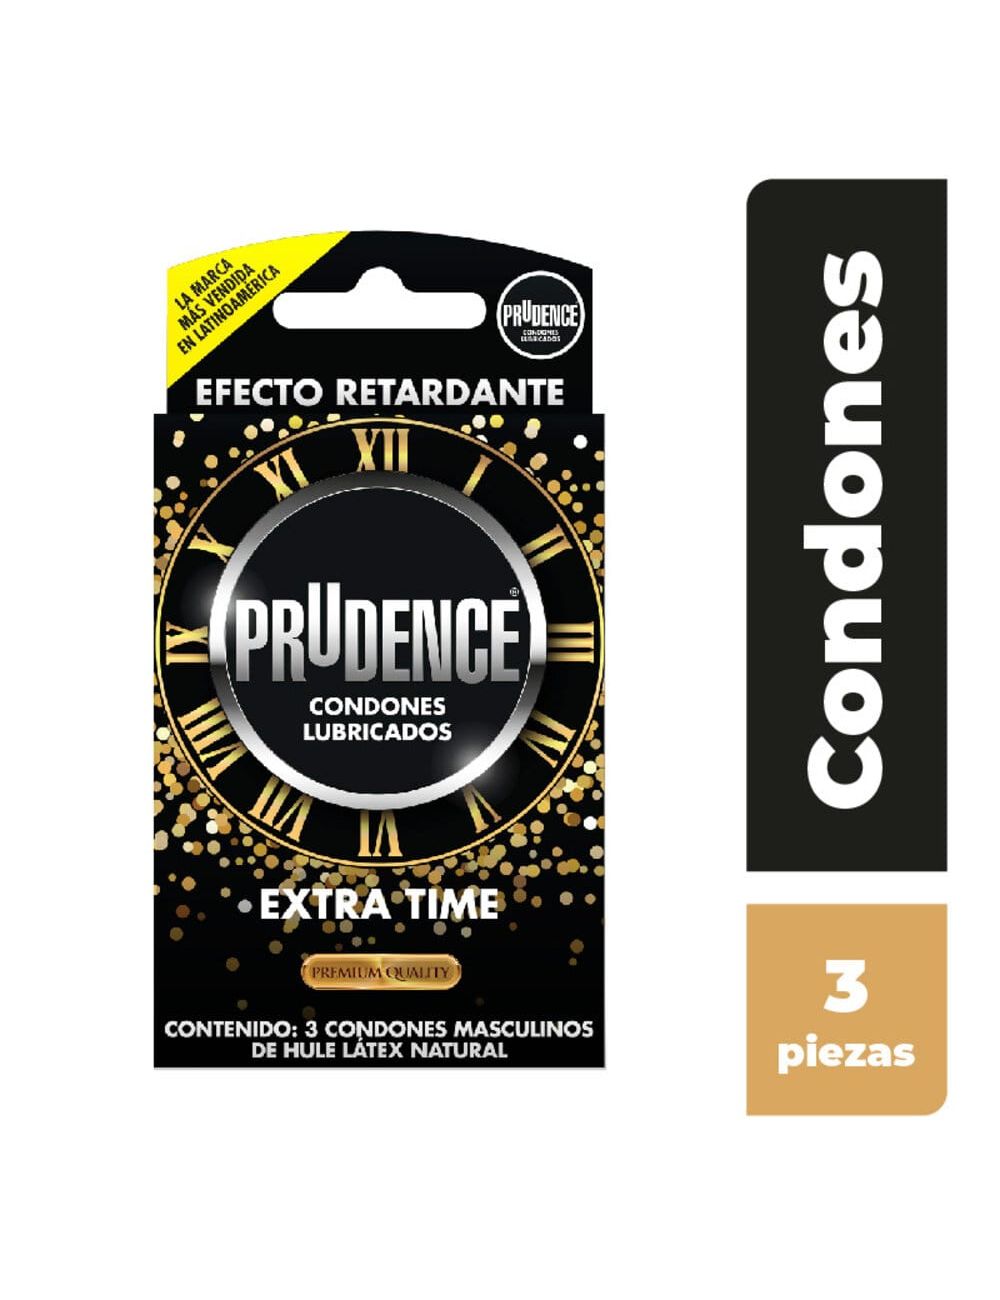 Precio Condones Prudence retardantes 3 piezas | Farmalisto MX